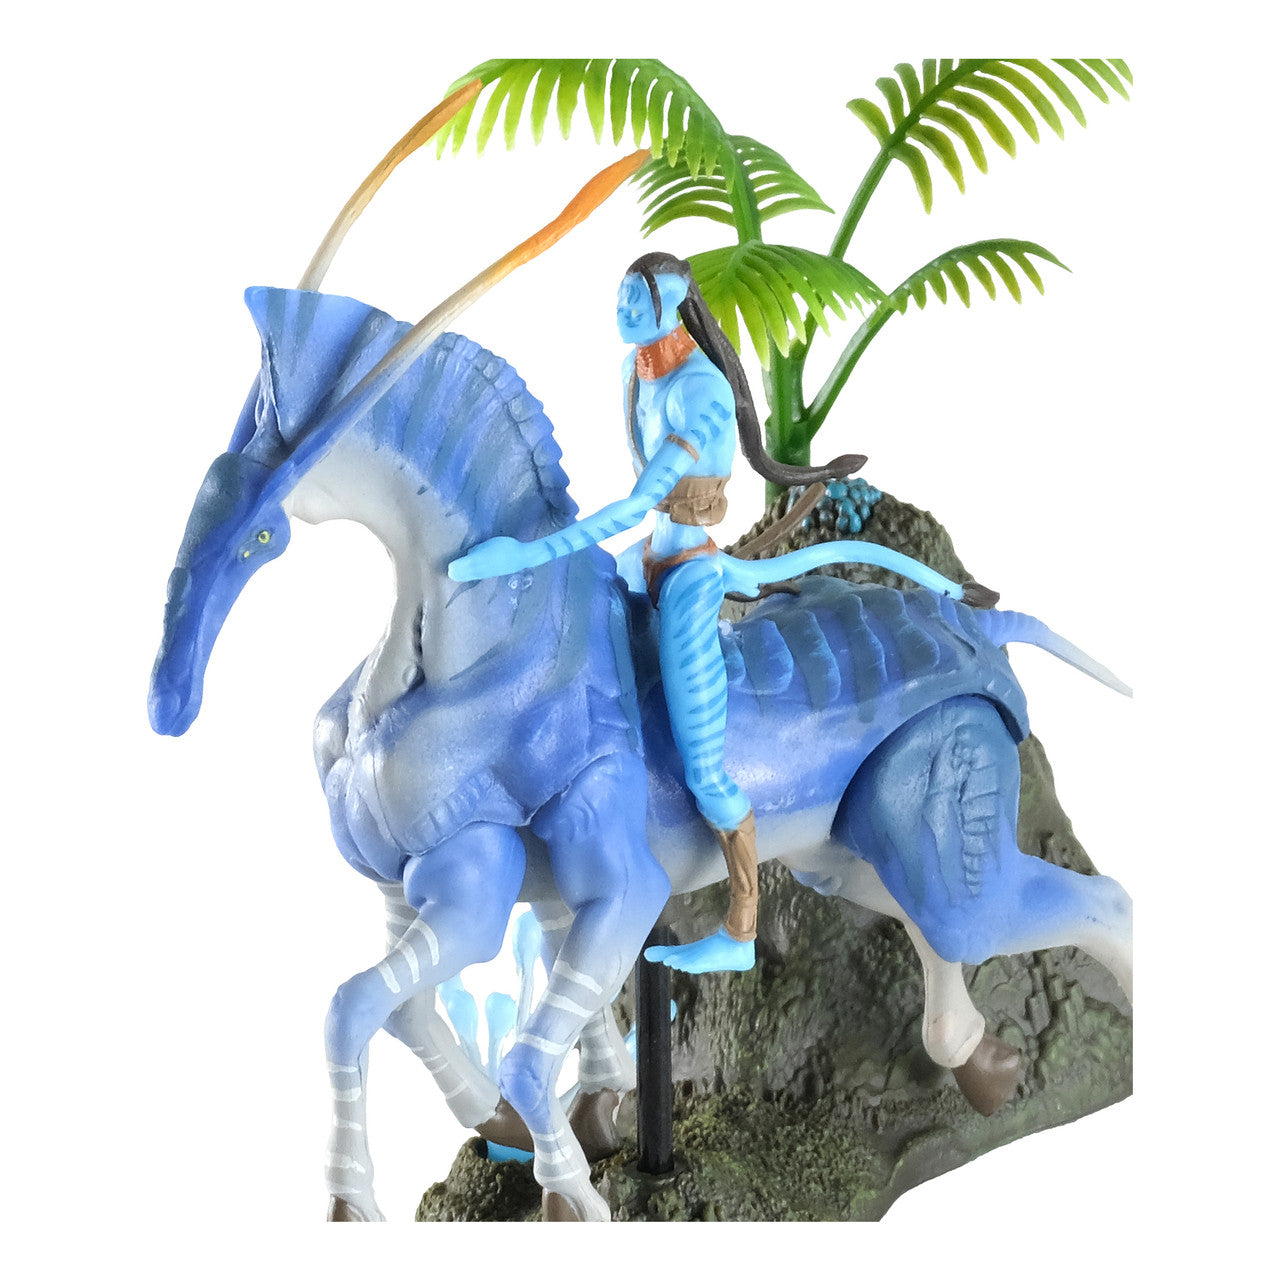 McFarlane Figura de Accion: Disney Avatar - Tsu tey y Direhorse Deluxe